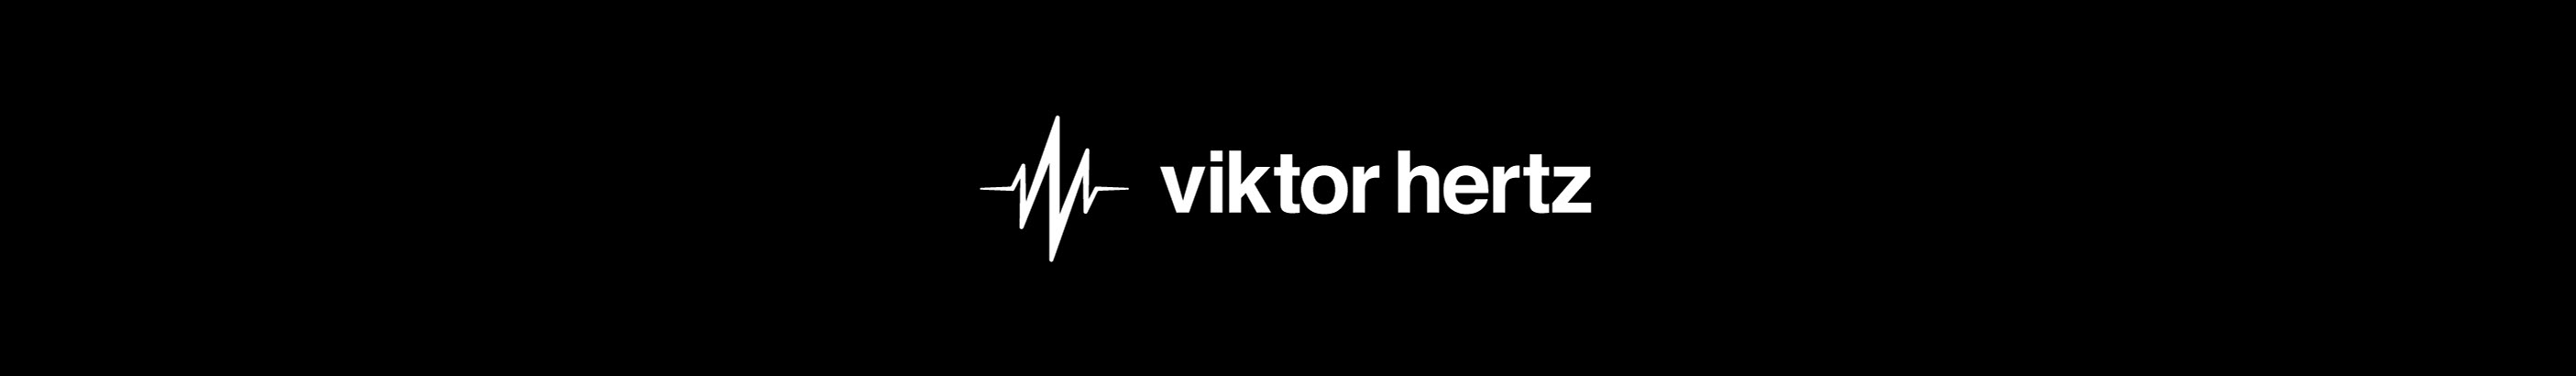 Viktor Hertz's profile banner